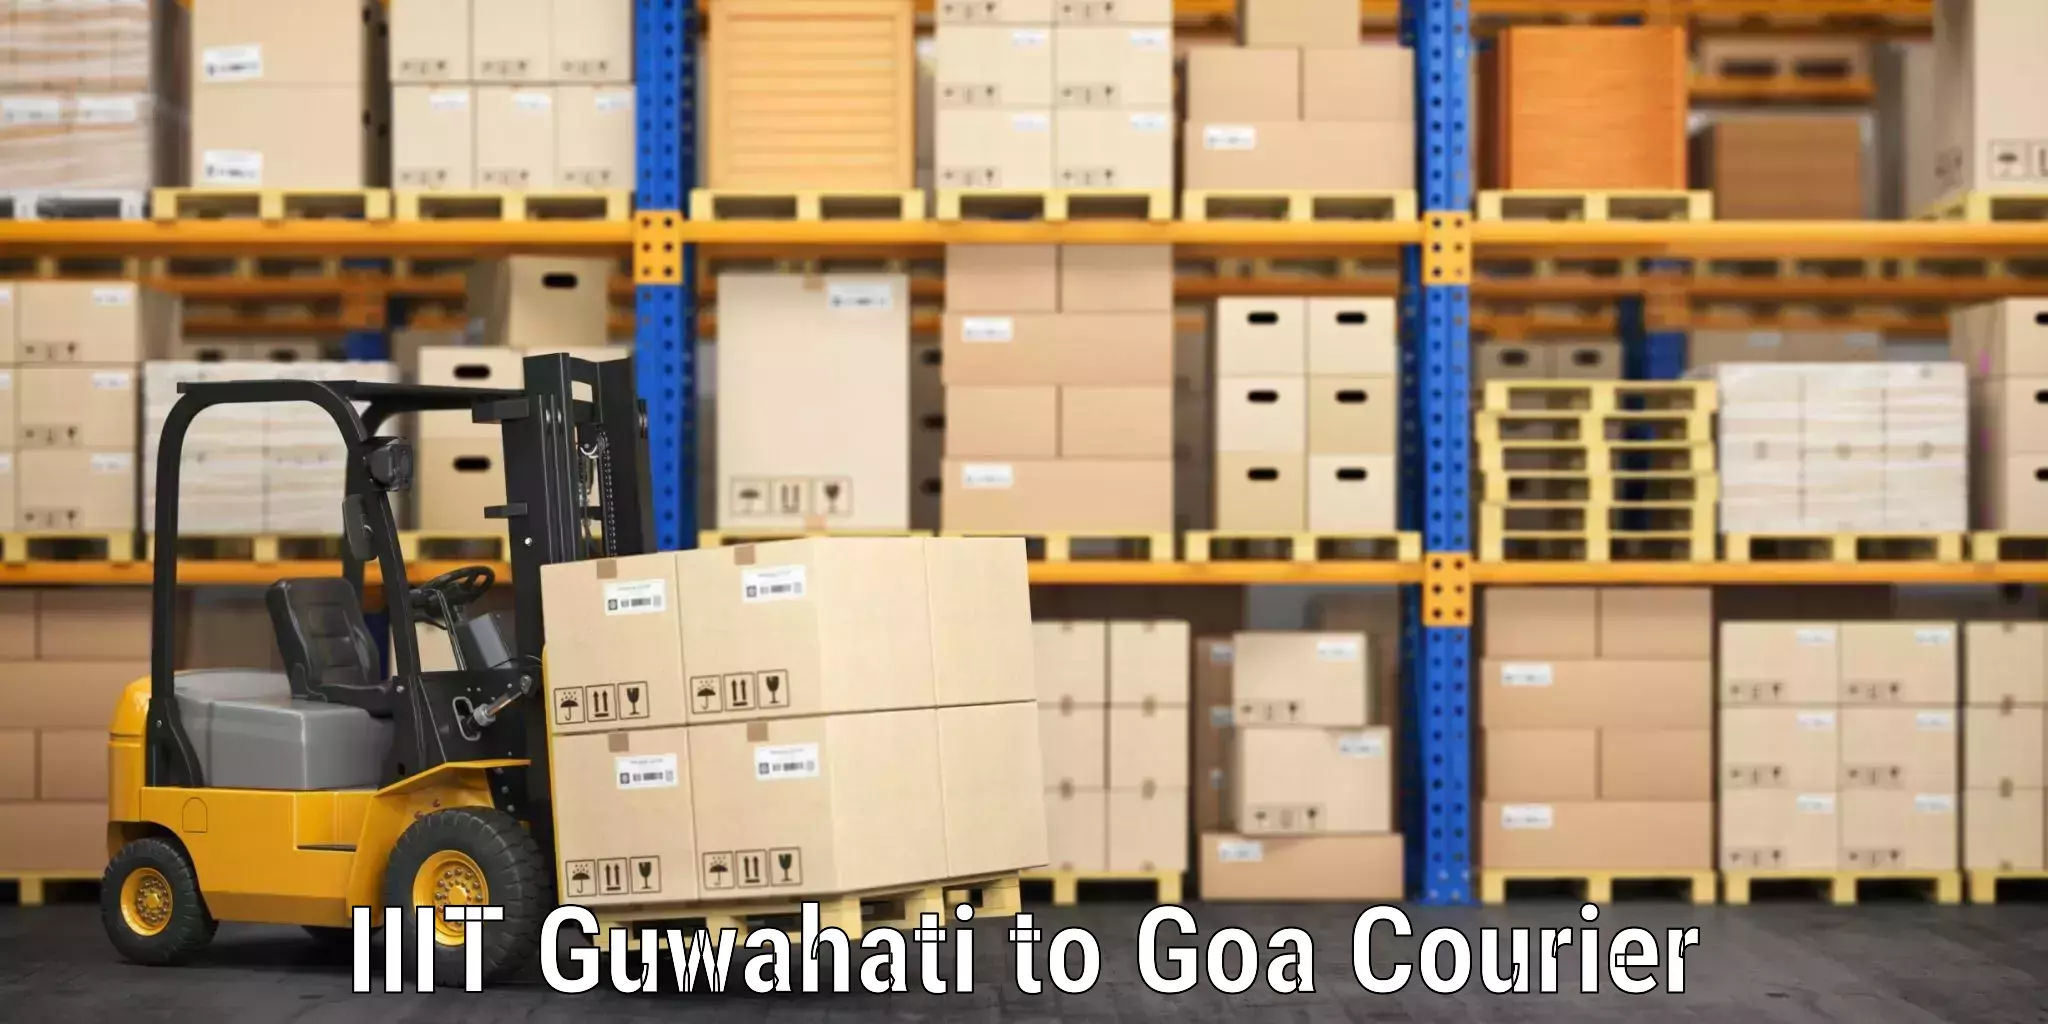 Luggage shipment tracking in IIIT Guwahati to Panaji